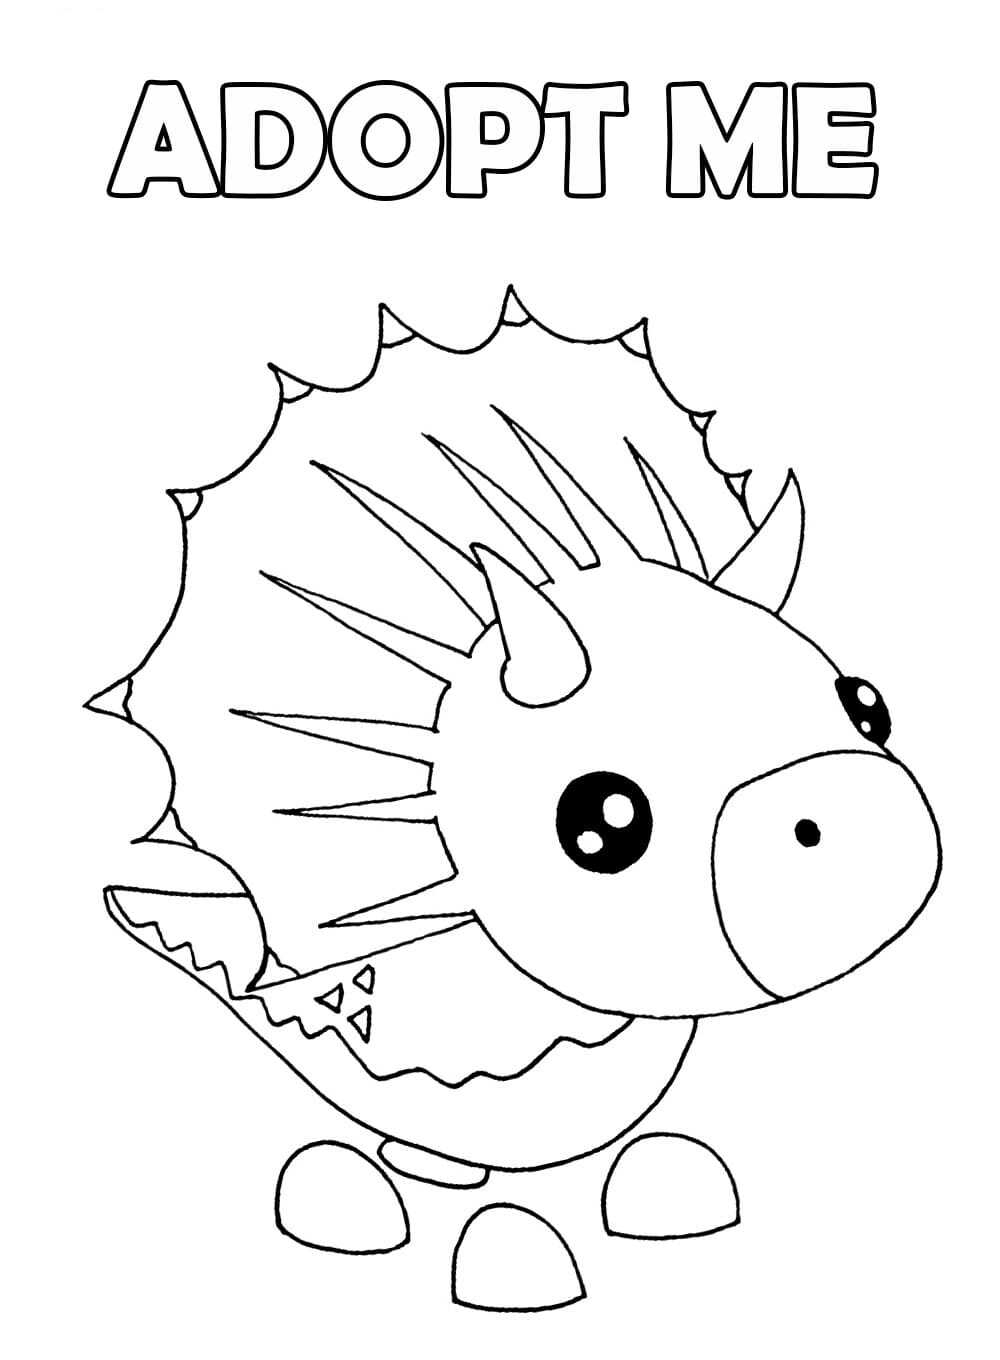 Le Triceratops représente un dinosaure avec trois cornes blanches sur la tête et le museau dans les jeux vidéo Adopt me d'Adopt me.